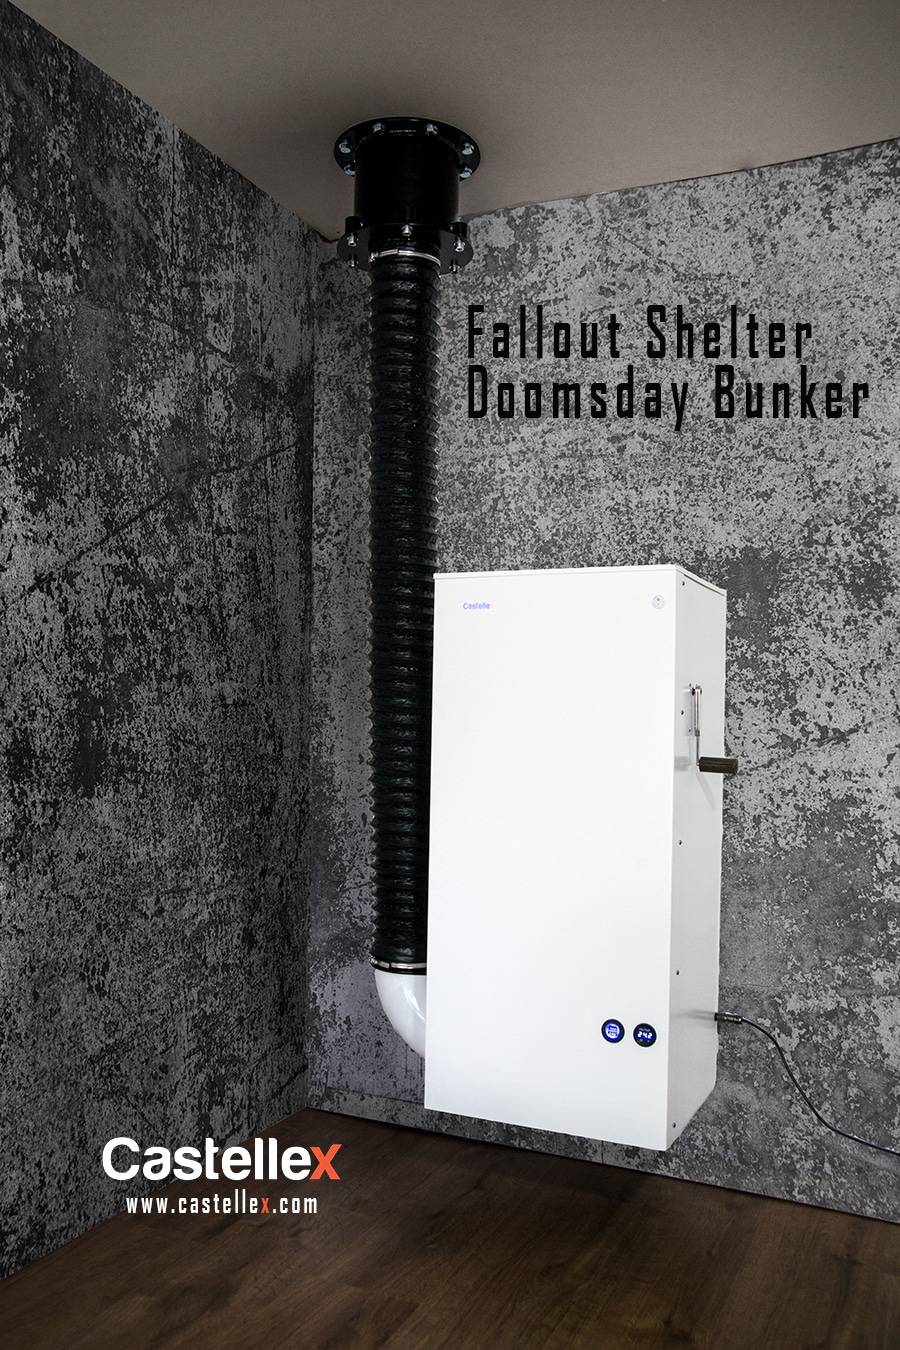 Disaster bunker